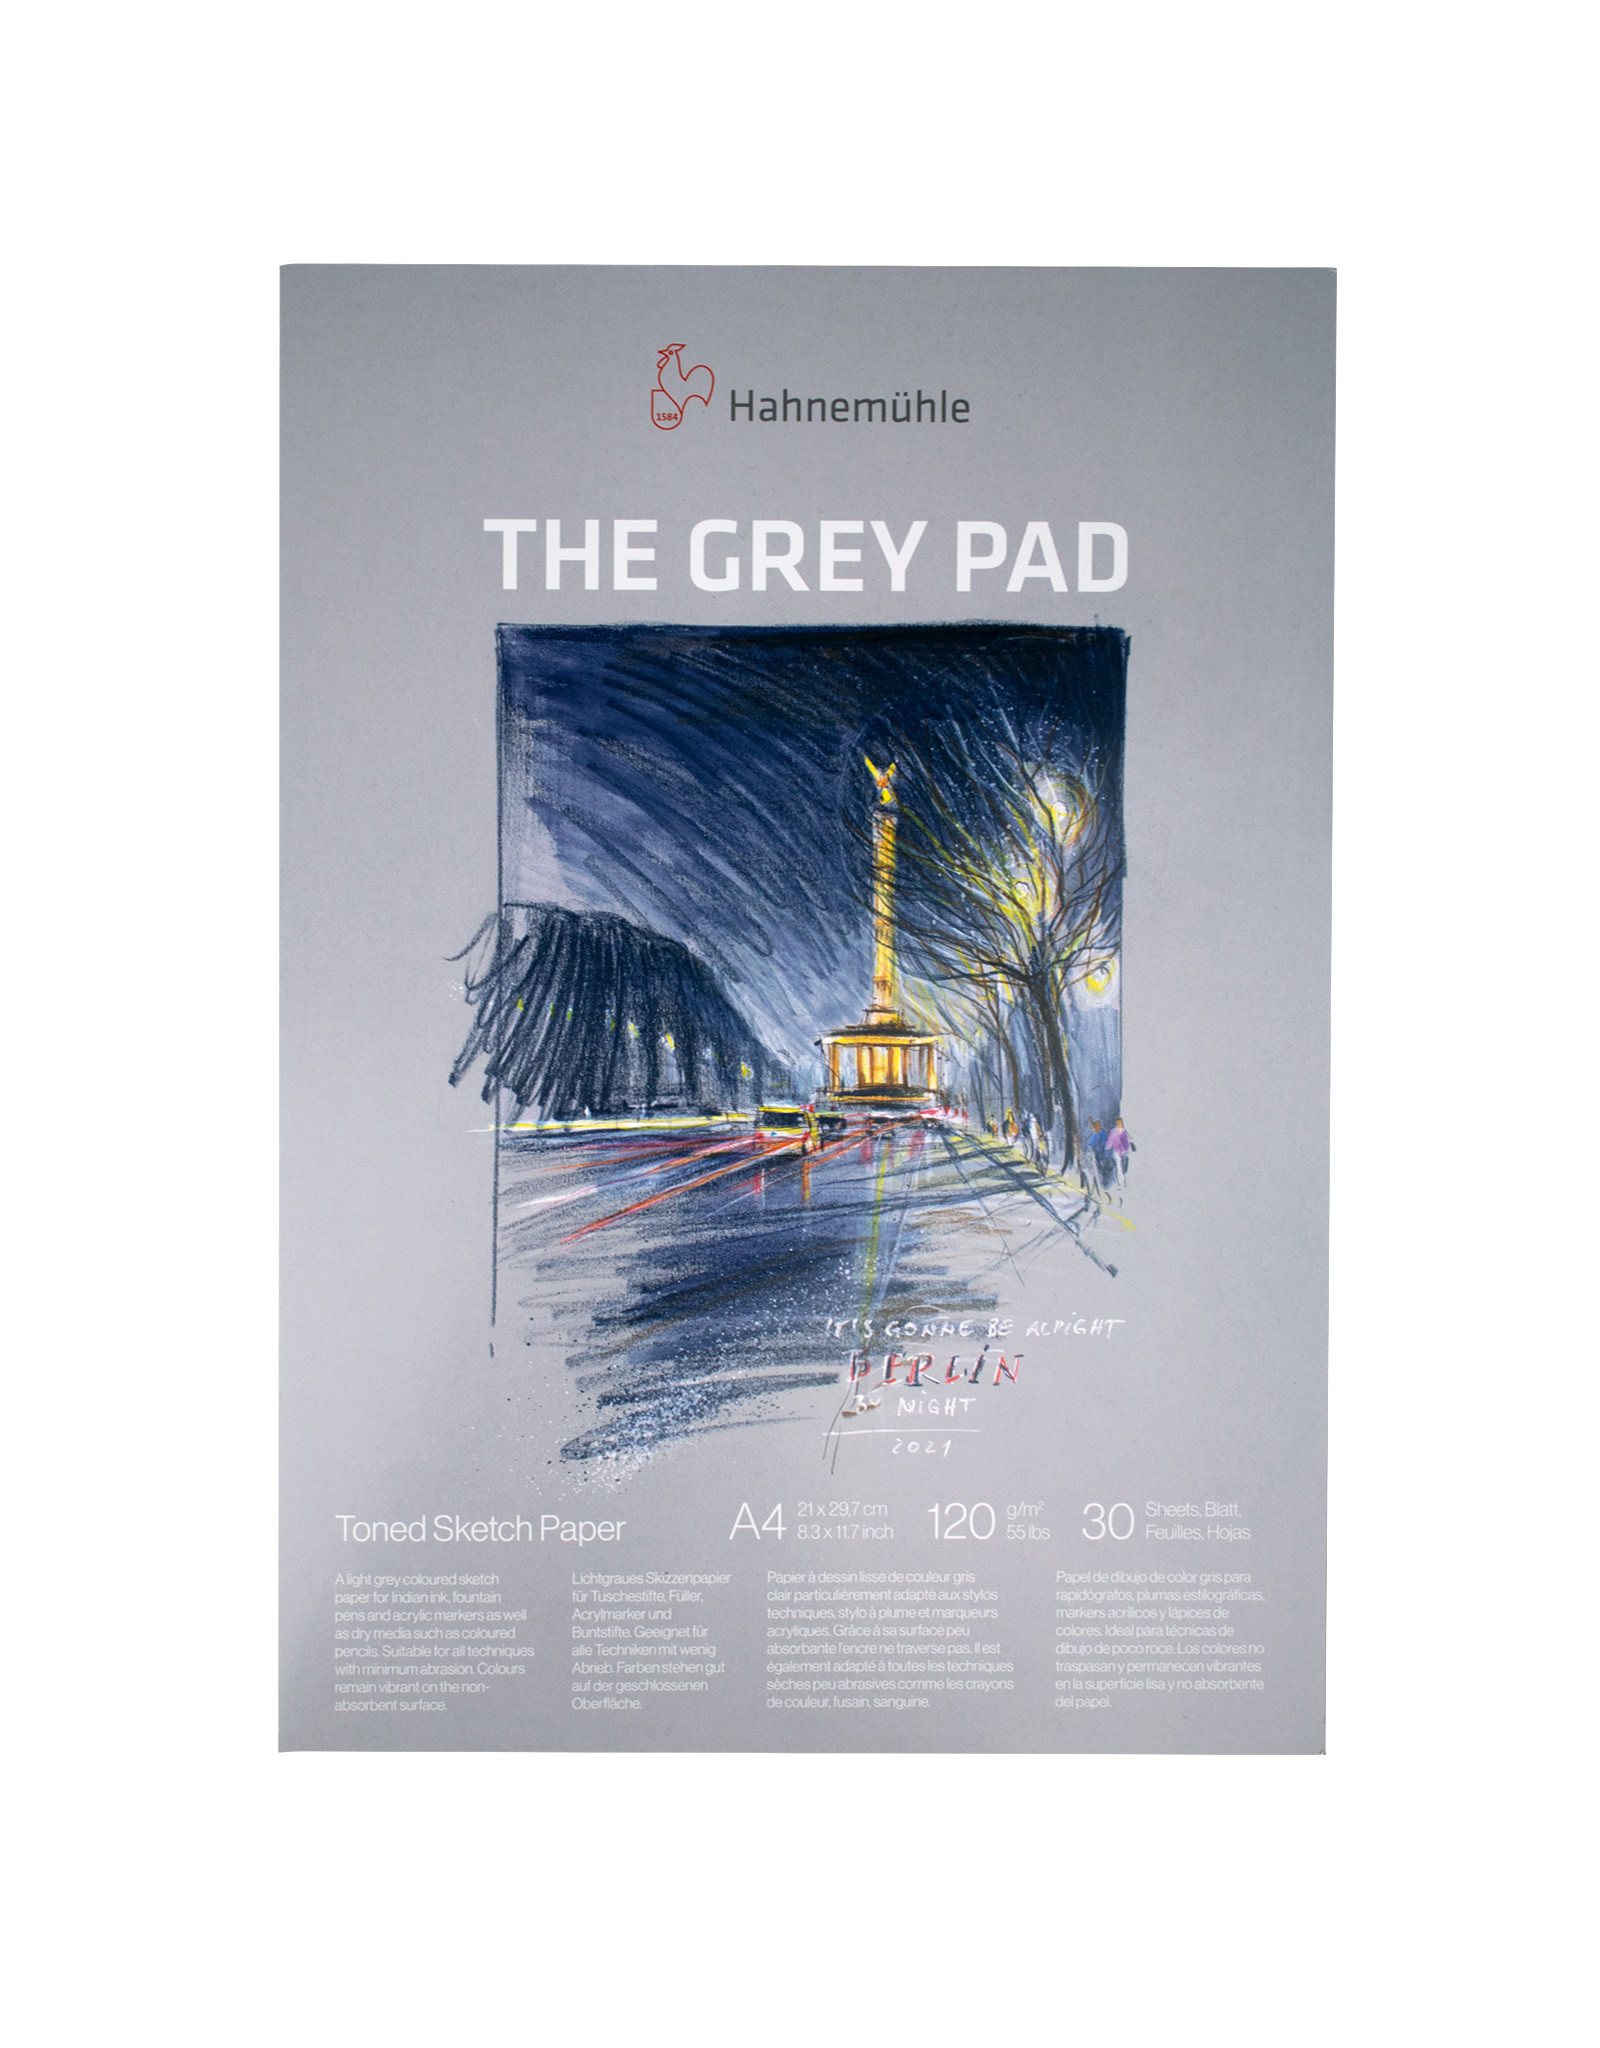 Hahnemuhle Hahnemuhle The Grey Pad, 21cm x 29.7cm(8.3” x 11.7”)